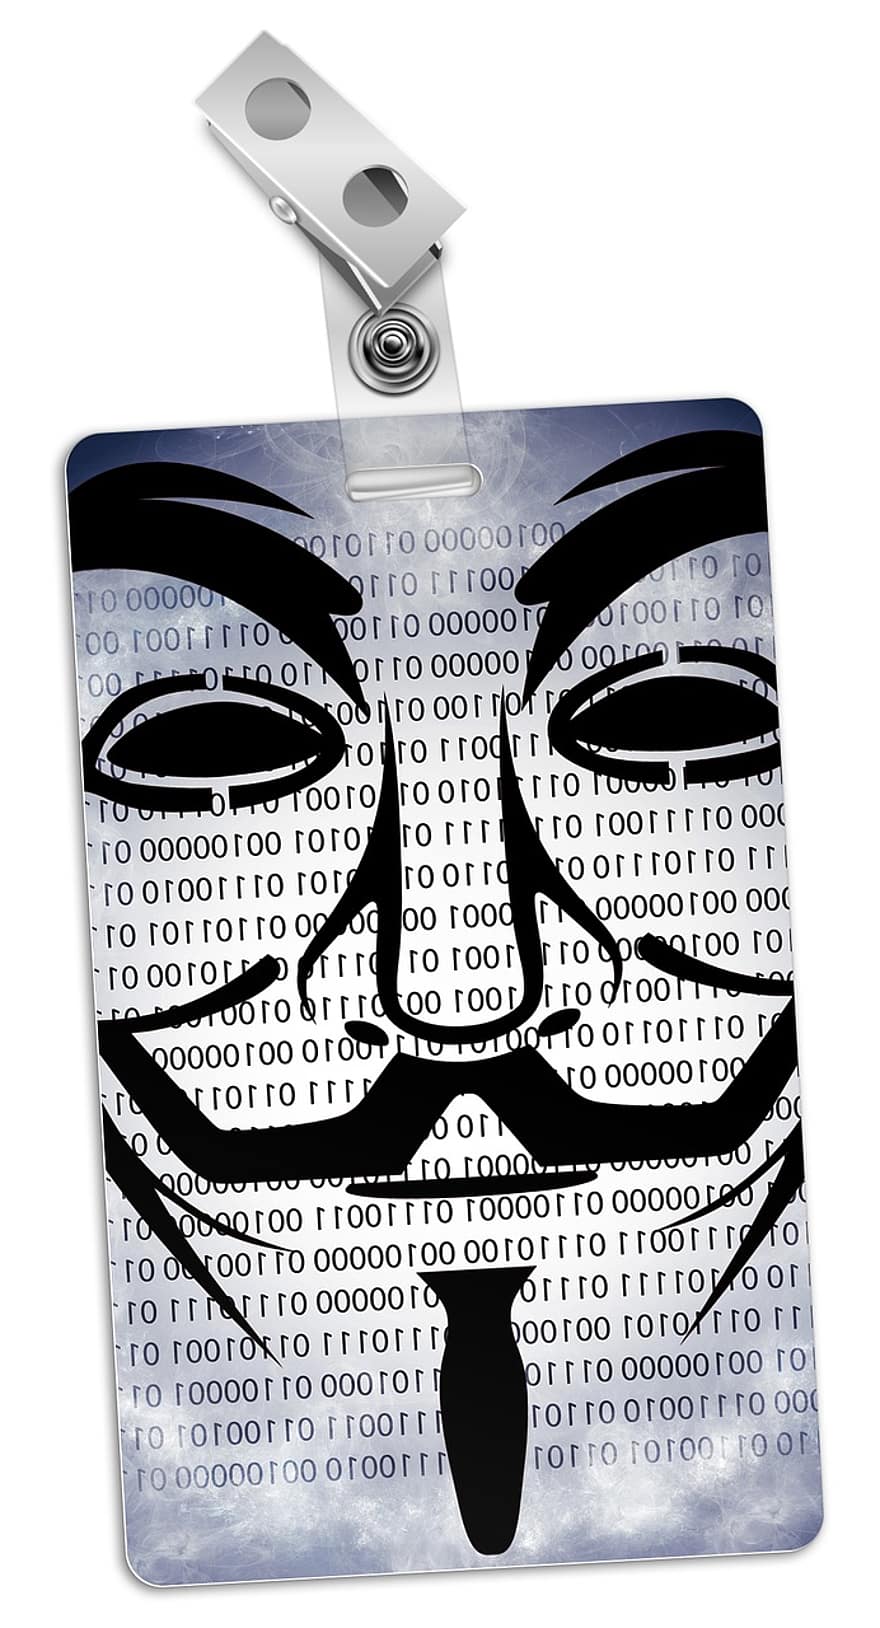 Sécurité, pirater, cyber, anonyme, l'Internet, ordinateur, mot de passe, pirate